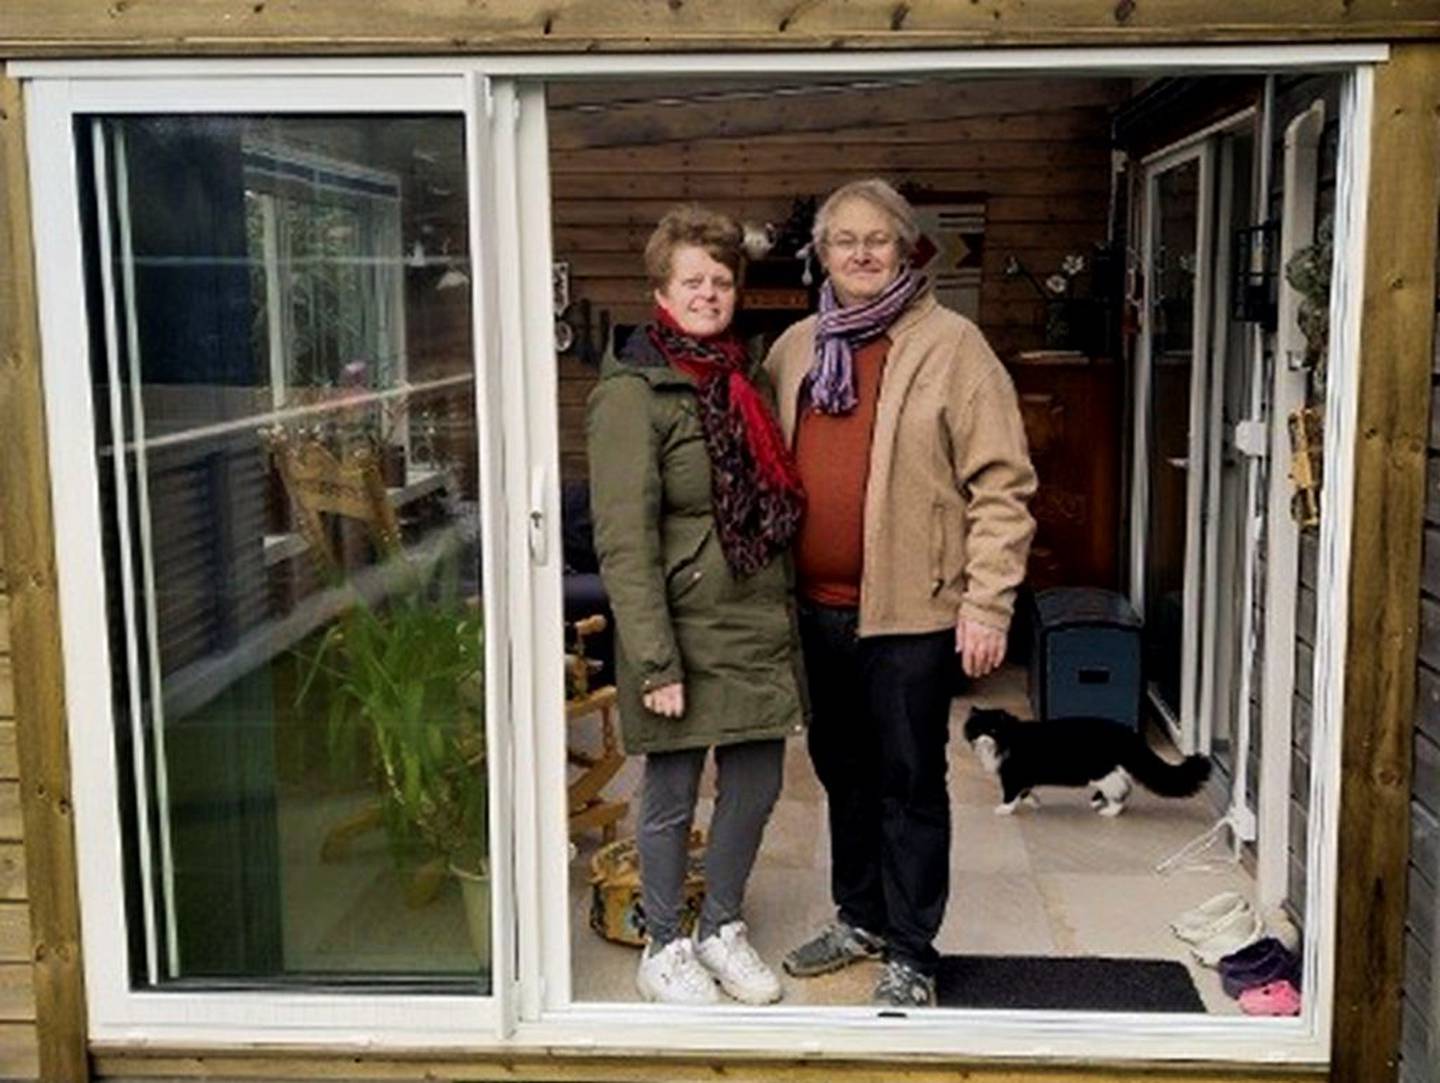 Torunn Oseberg (49) og Steinar (46) bruker hver dag til å bygge et trygt hjem.

Privat